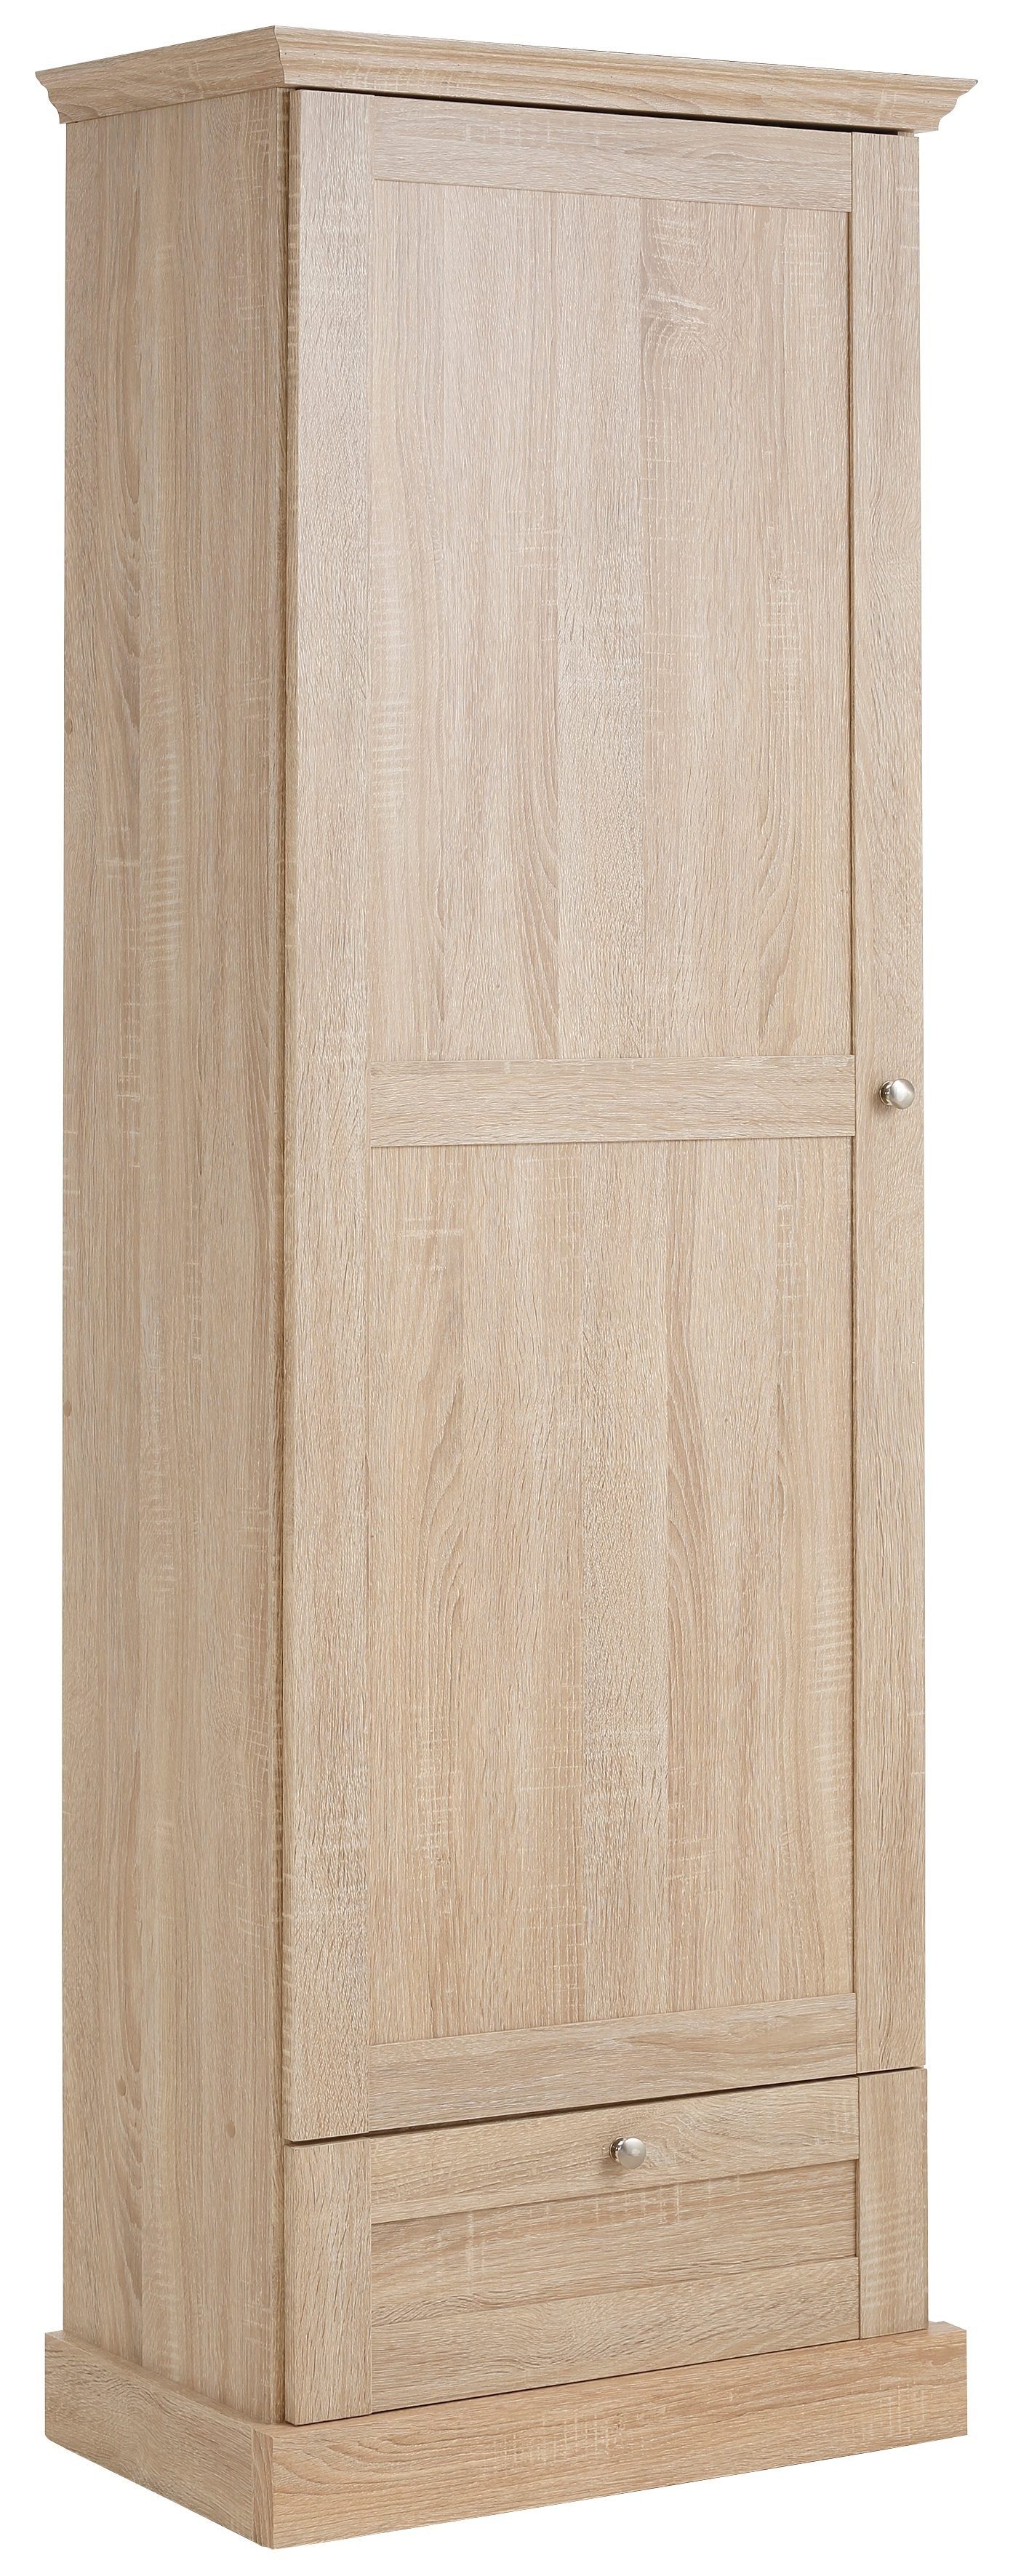 Home affaire Garderobenschrank Binz mit schöner Holzoptik, mit vielen Stauraummöglichkeiten, Höhe 180 cm sonoma/eichefarben | Garderobenschränke